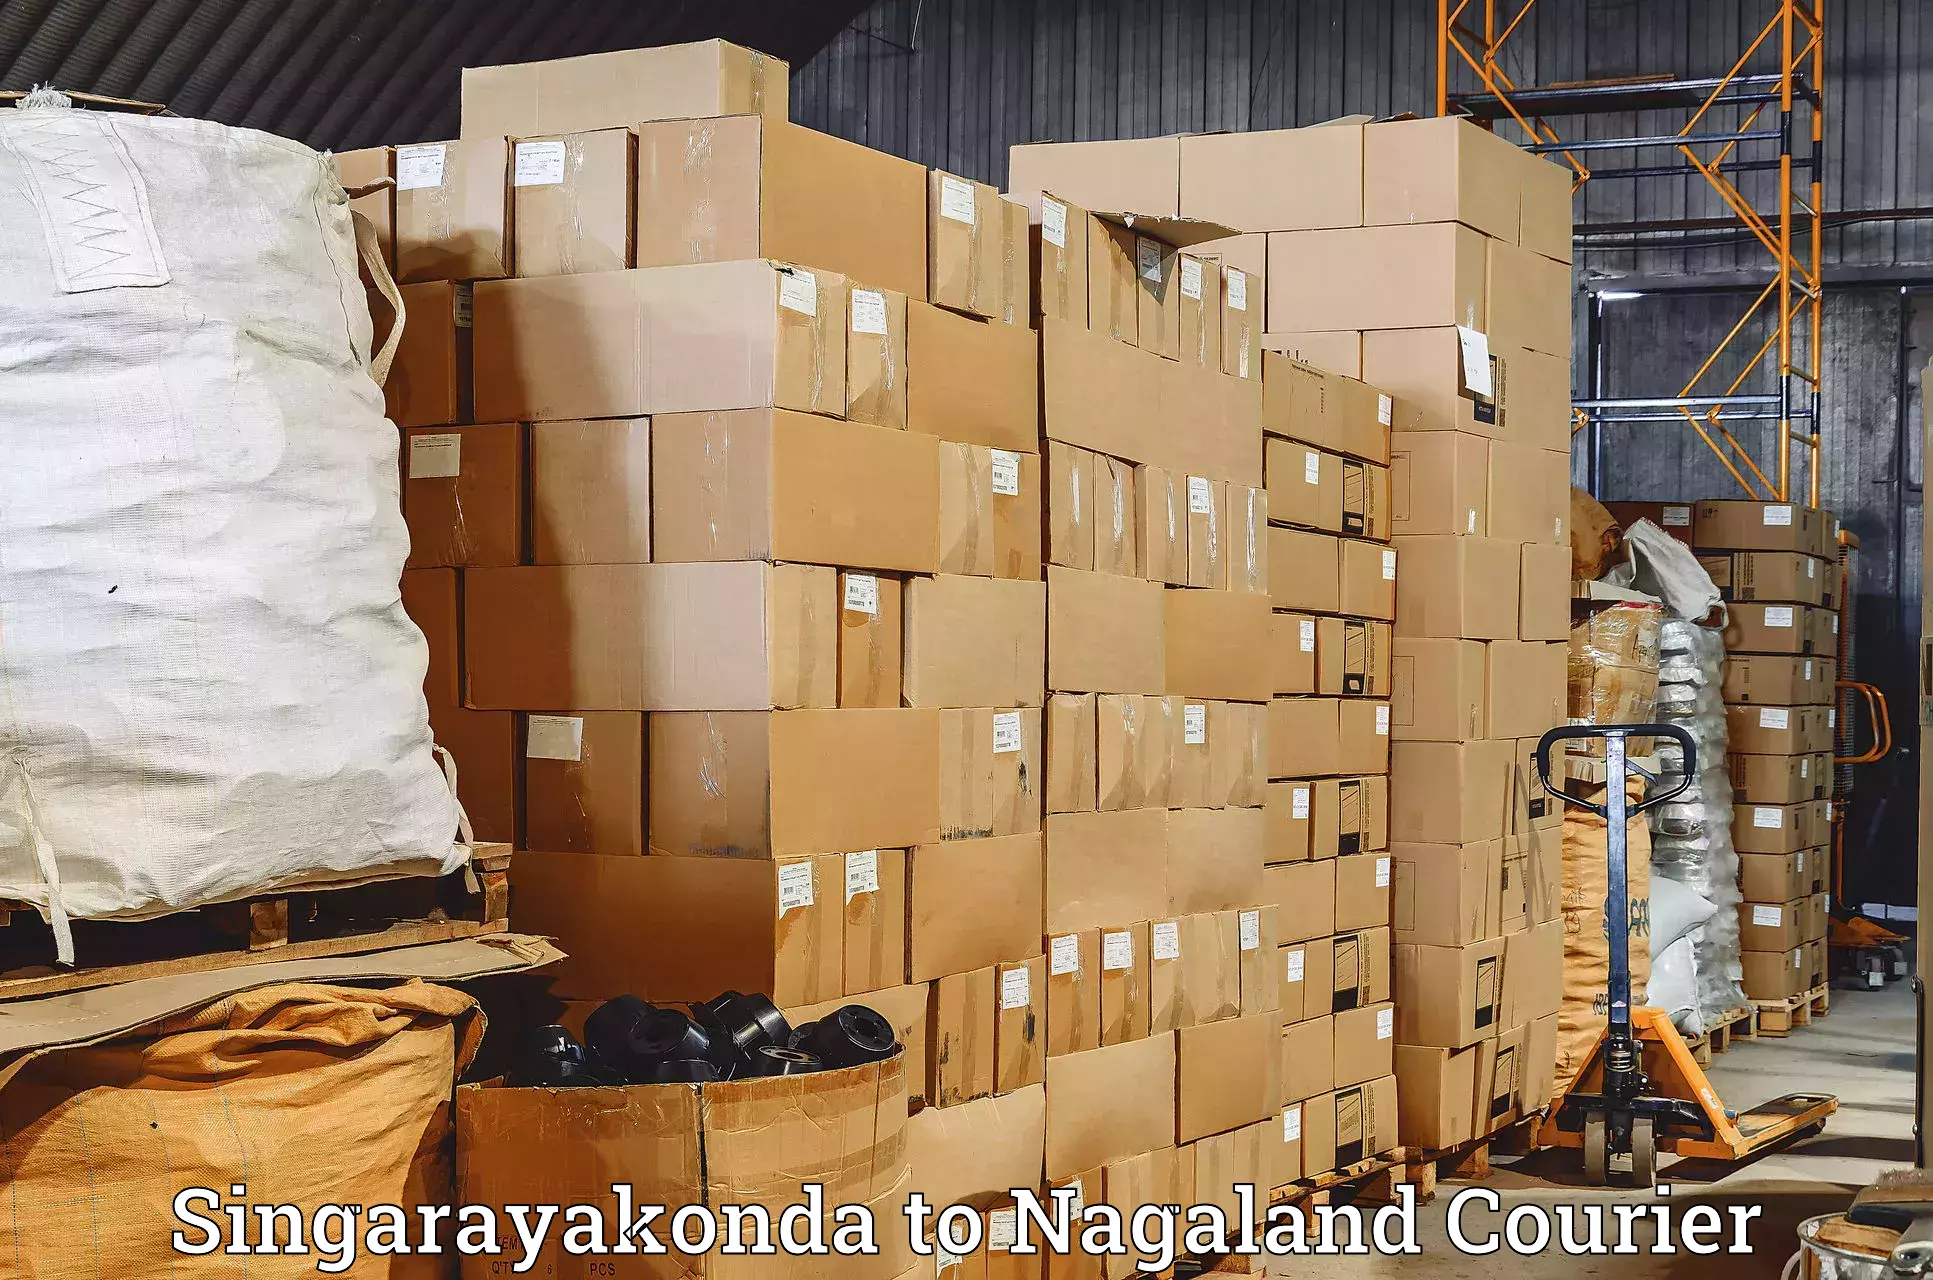 International courier rates Singarayakonda to NIT Nagaland